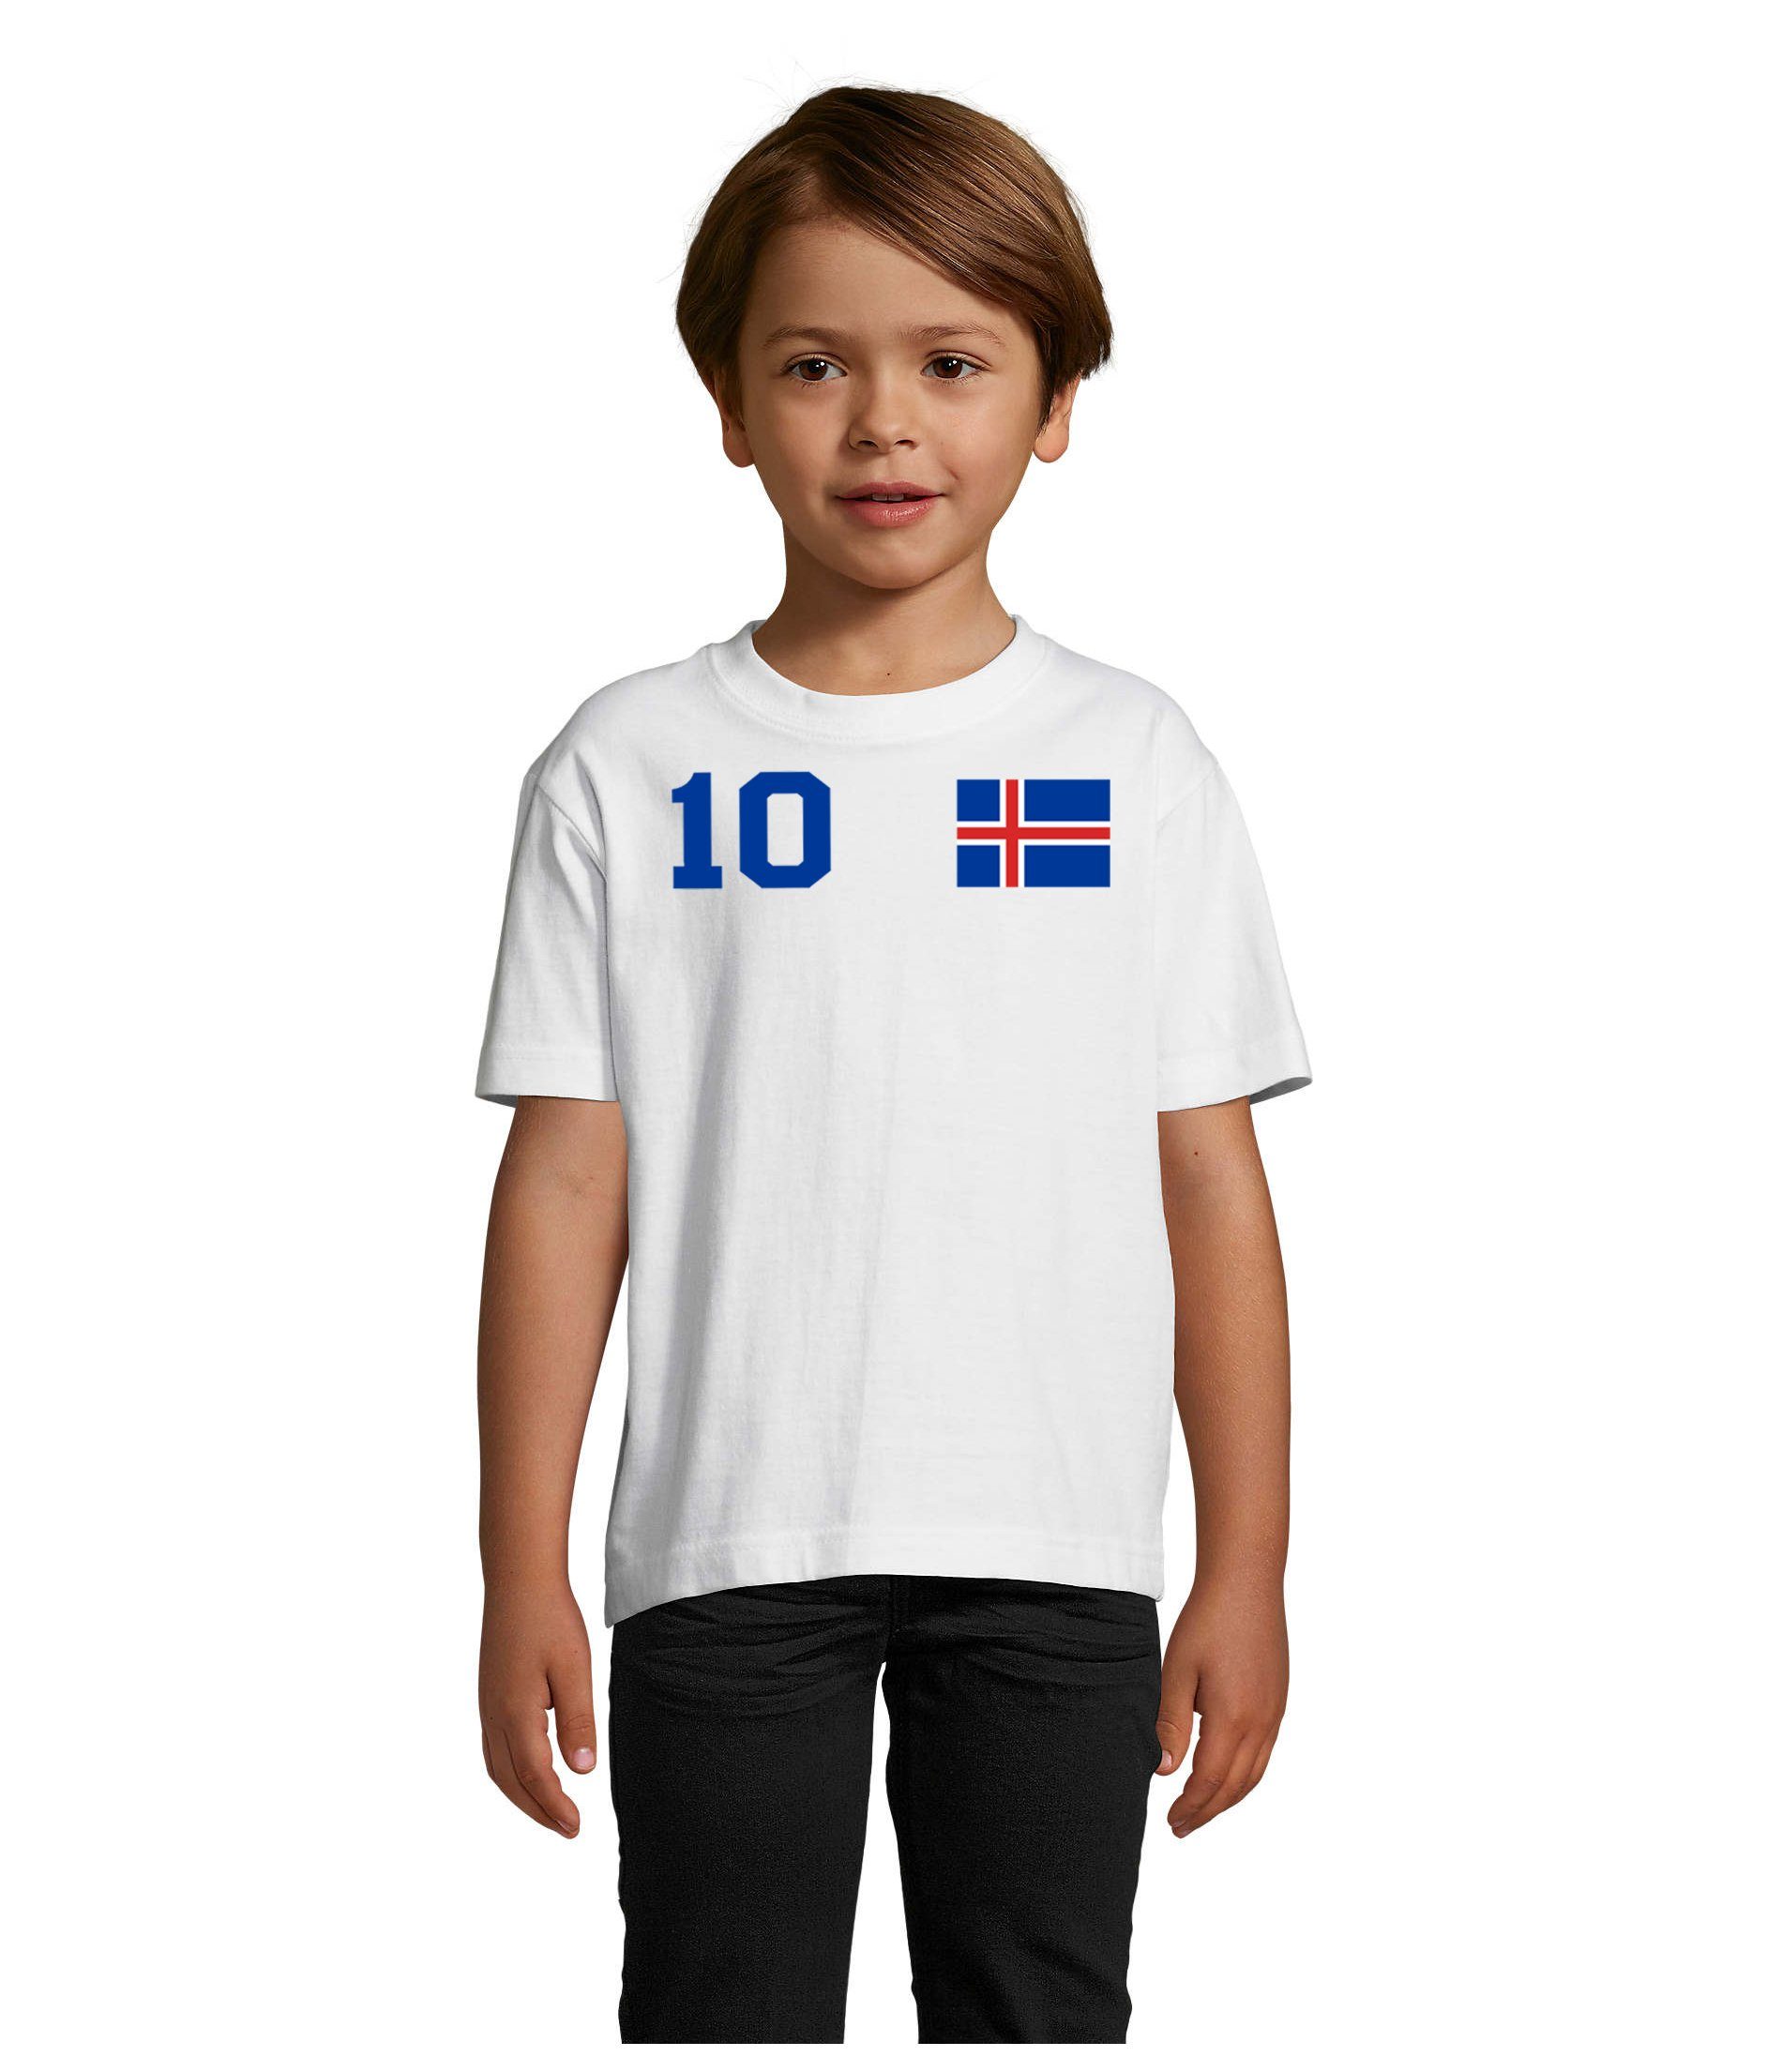 Handball Island Brownie Fußball Kinder Sport T-Shirt Iceland Blondie Trikot WM Blau/Weiss & EM Meister